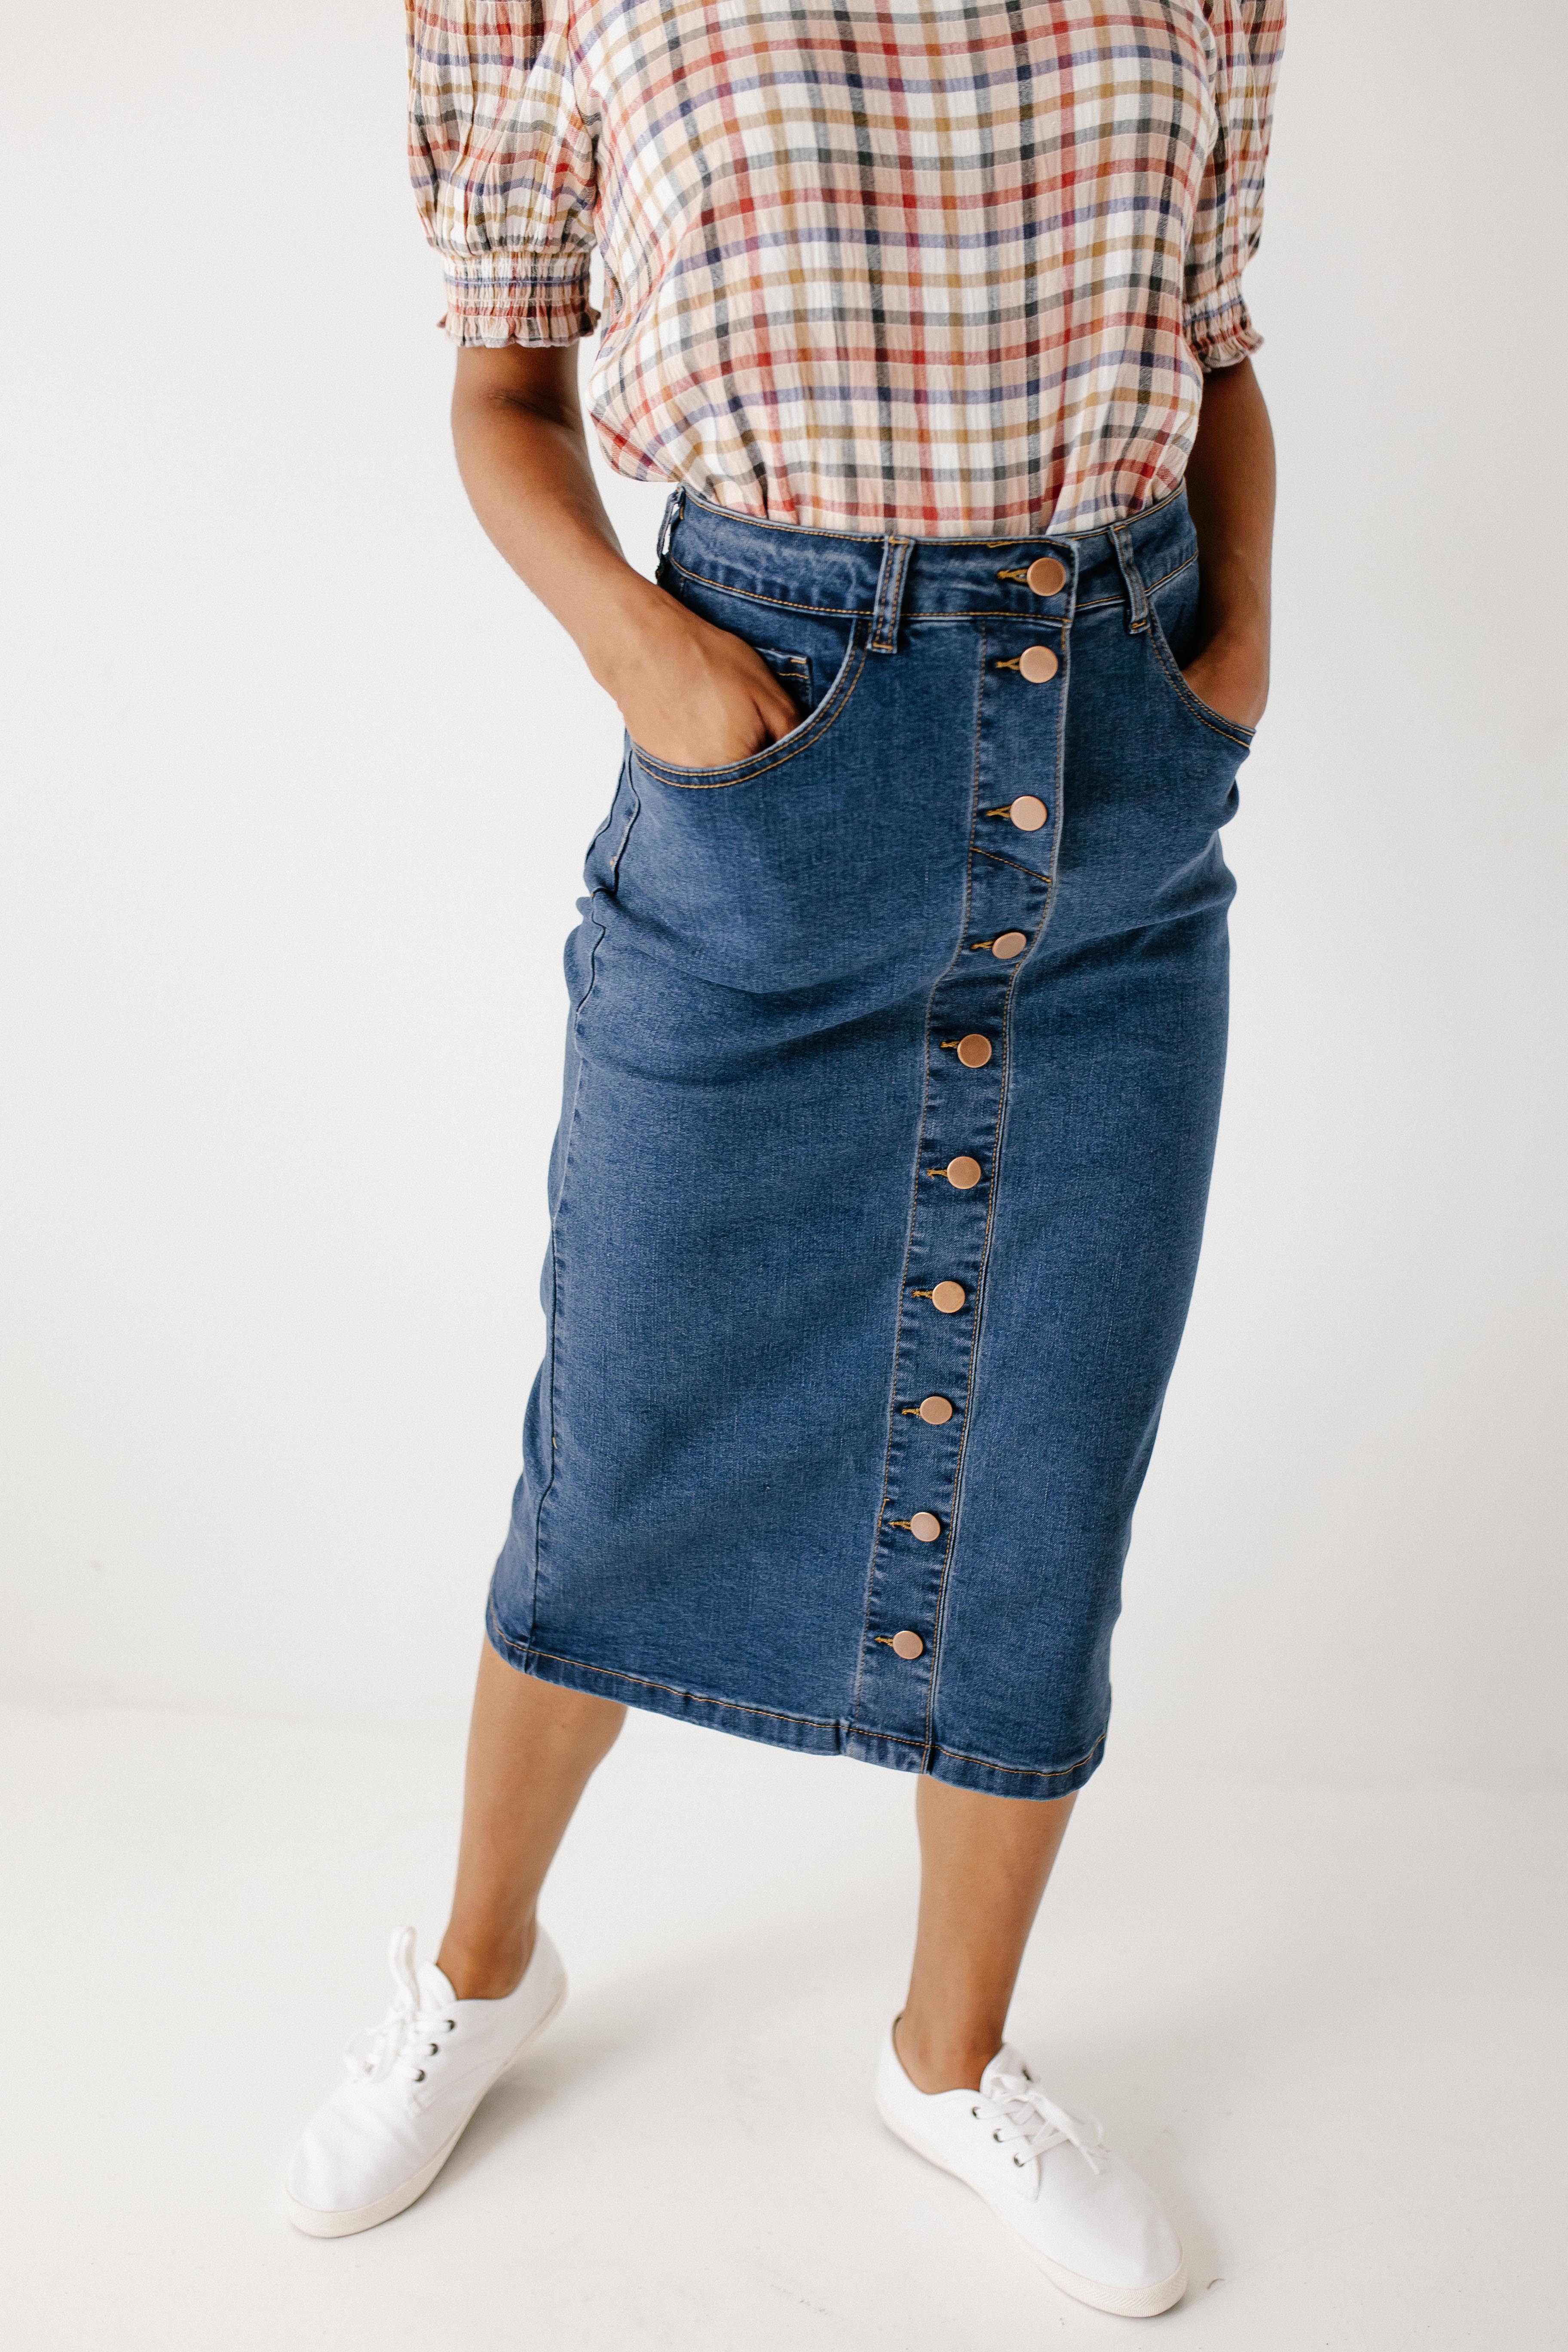 'Leanne' Button Down Denim Midi Skirt in Dark Wash FINAL SALE – The ...